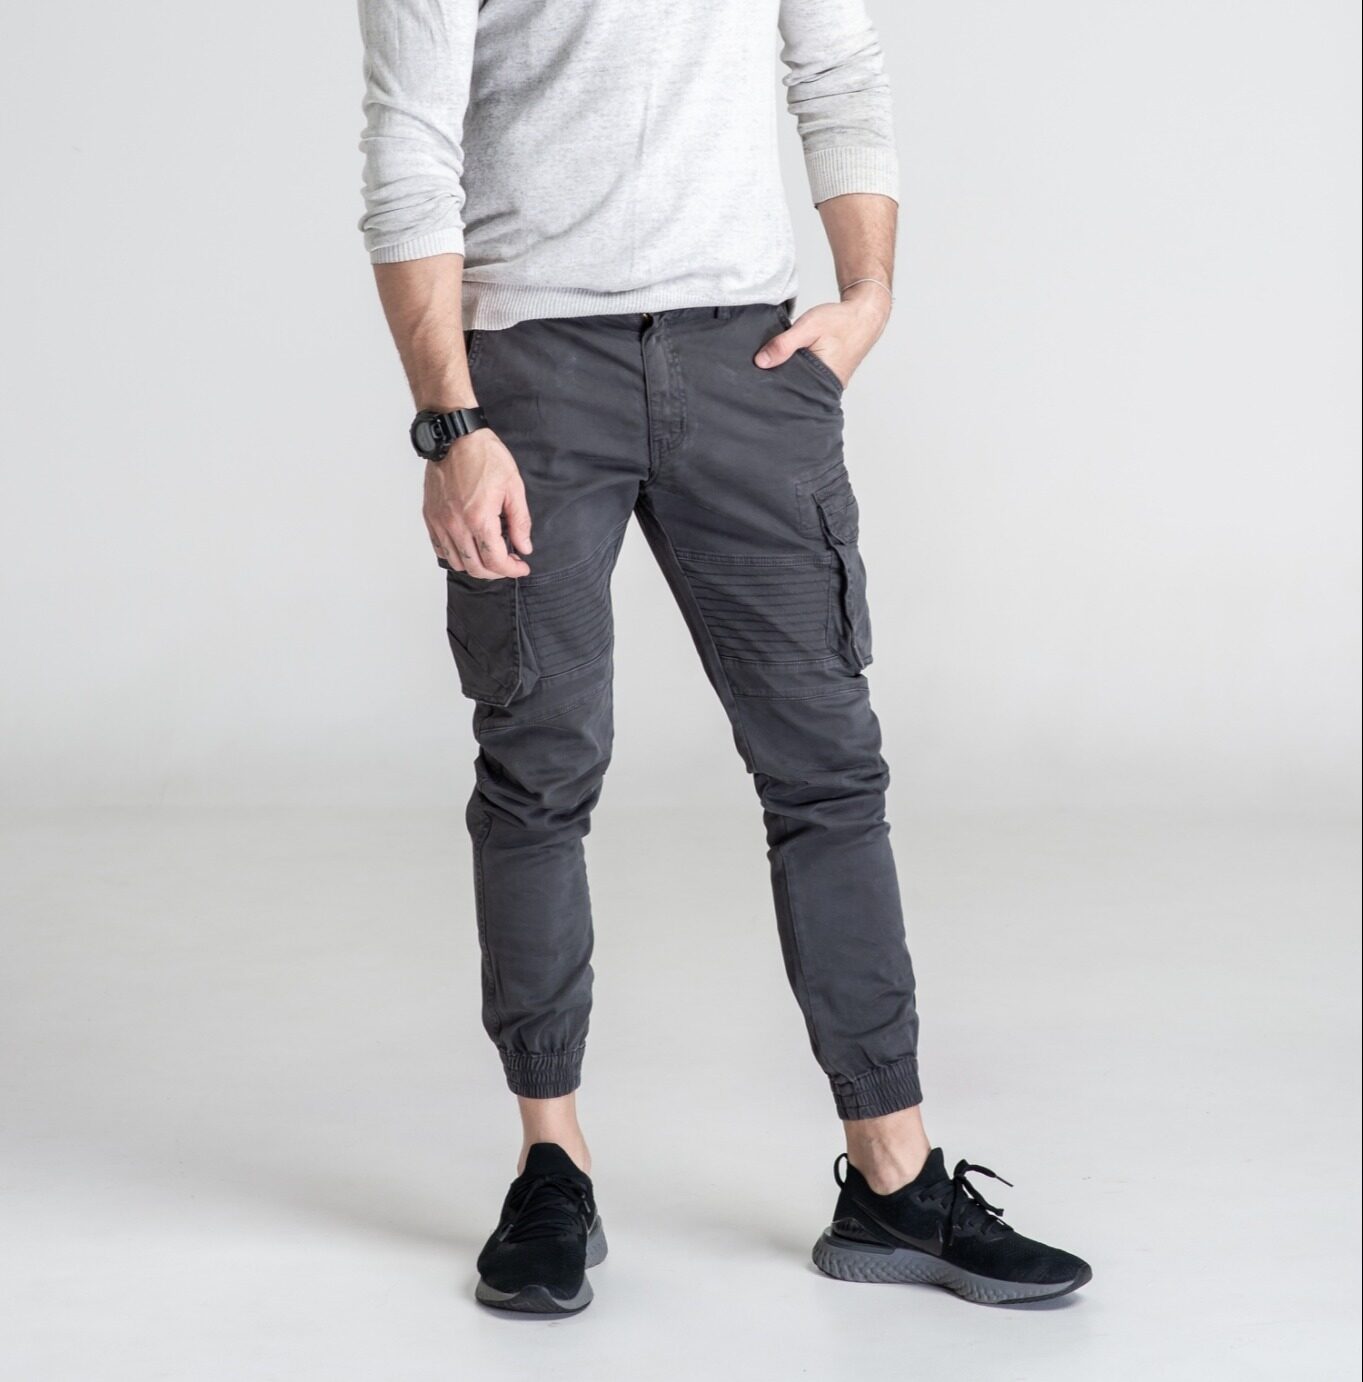 กางเกงขายาวผู้ชาย กางเกงขายาวคาร์โก้หลายกระเป๋า ปลายขาจั๊มชาย สุดเท่ ทรงสวยสไตร์เกาหลีW9061